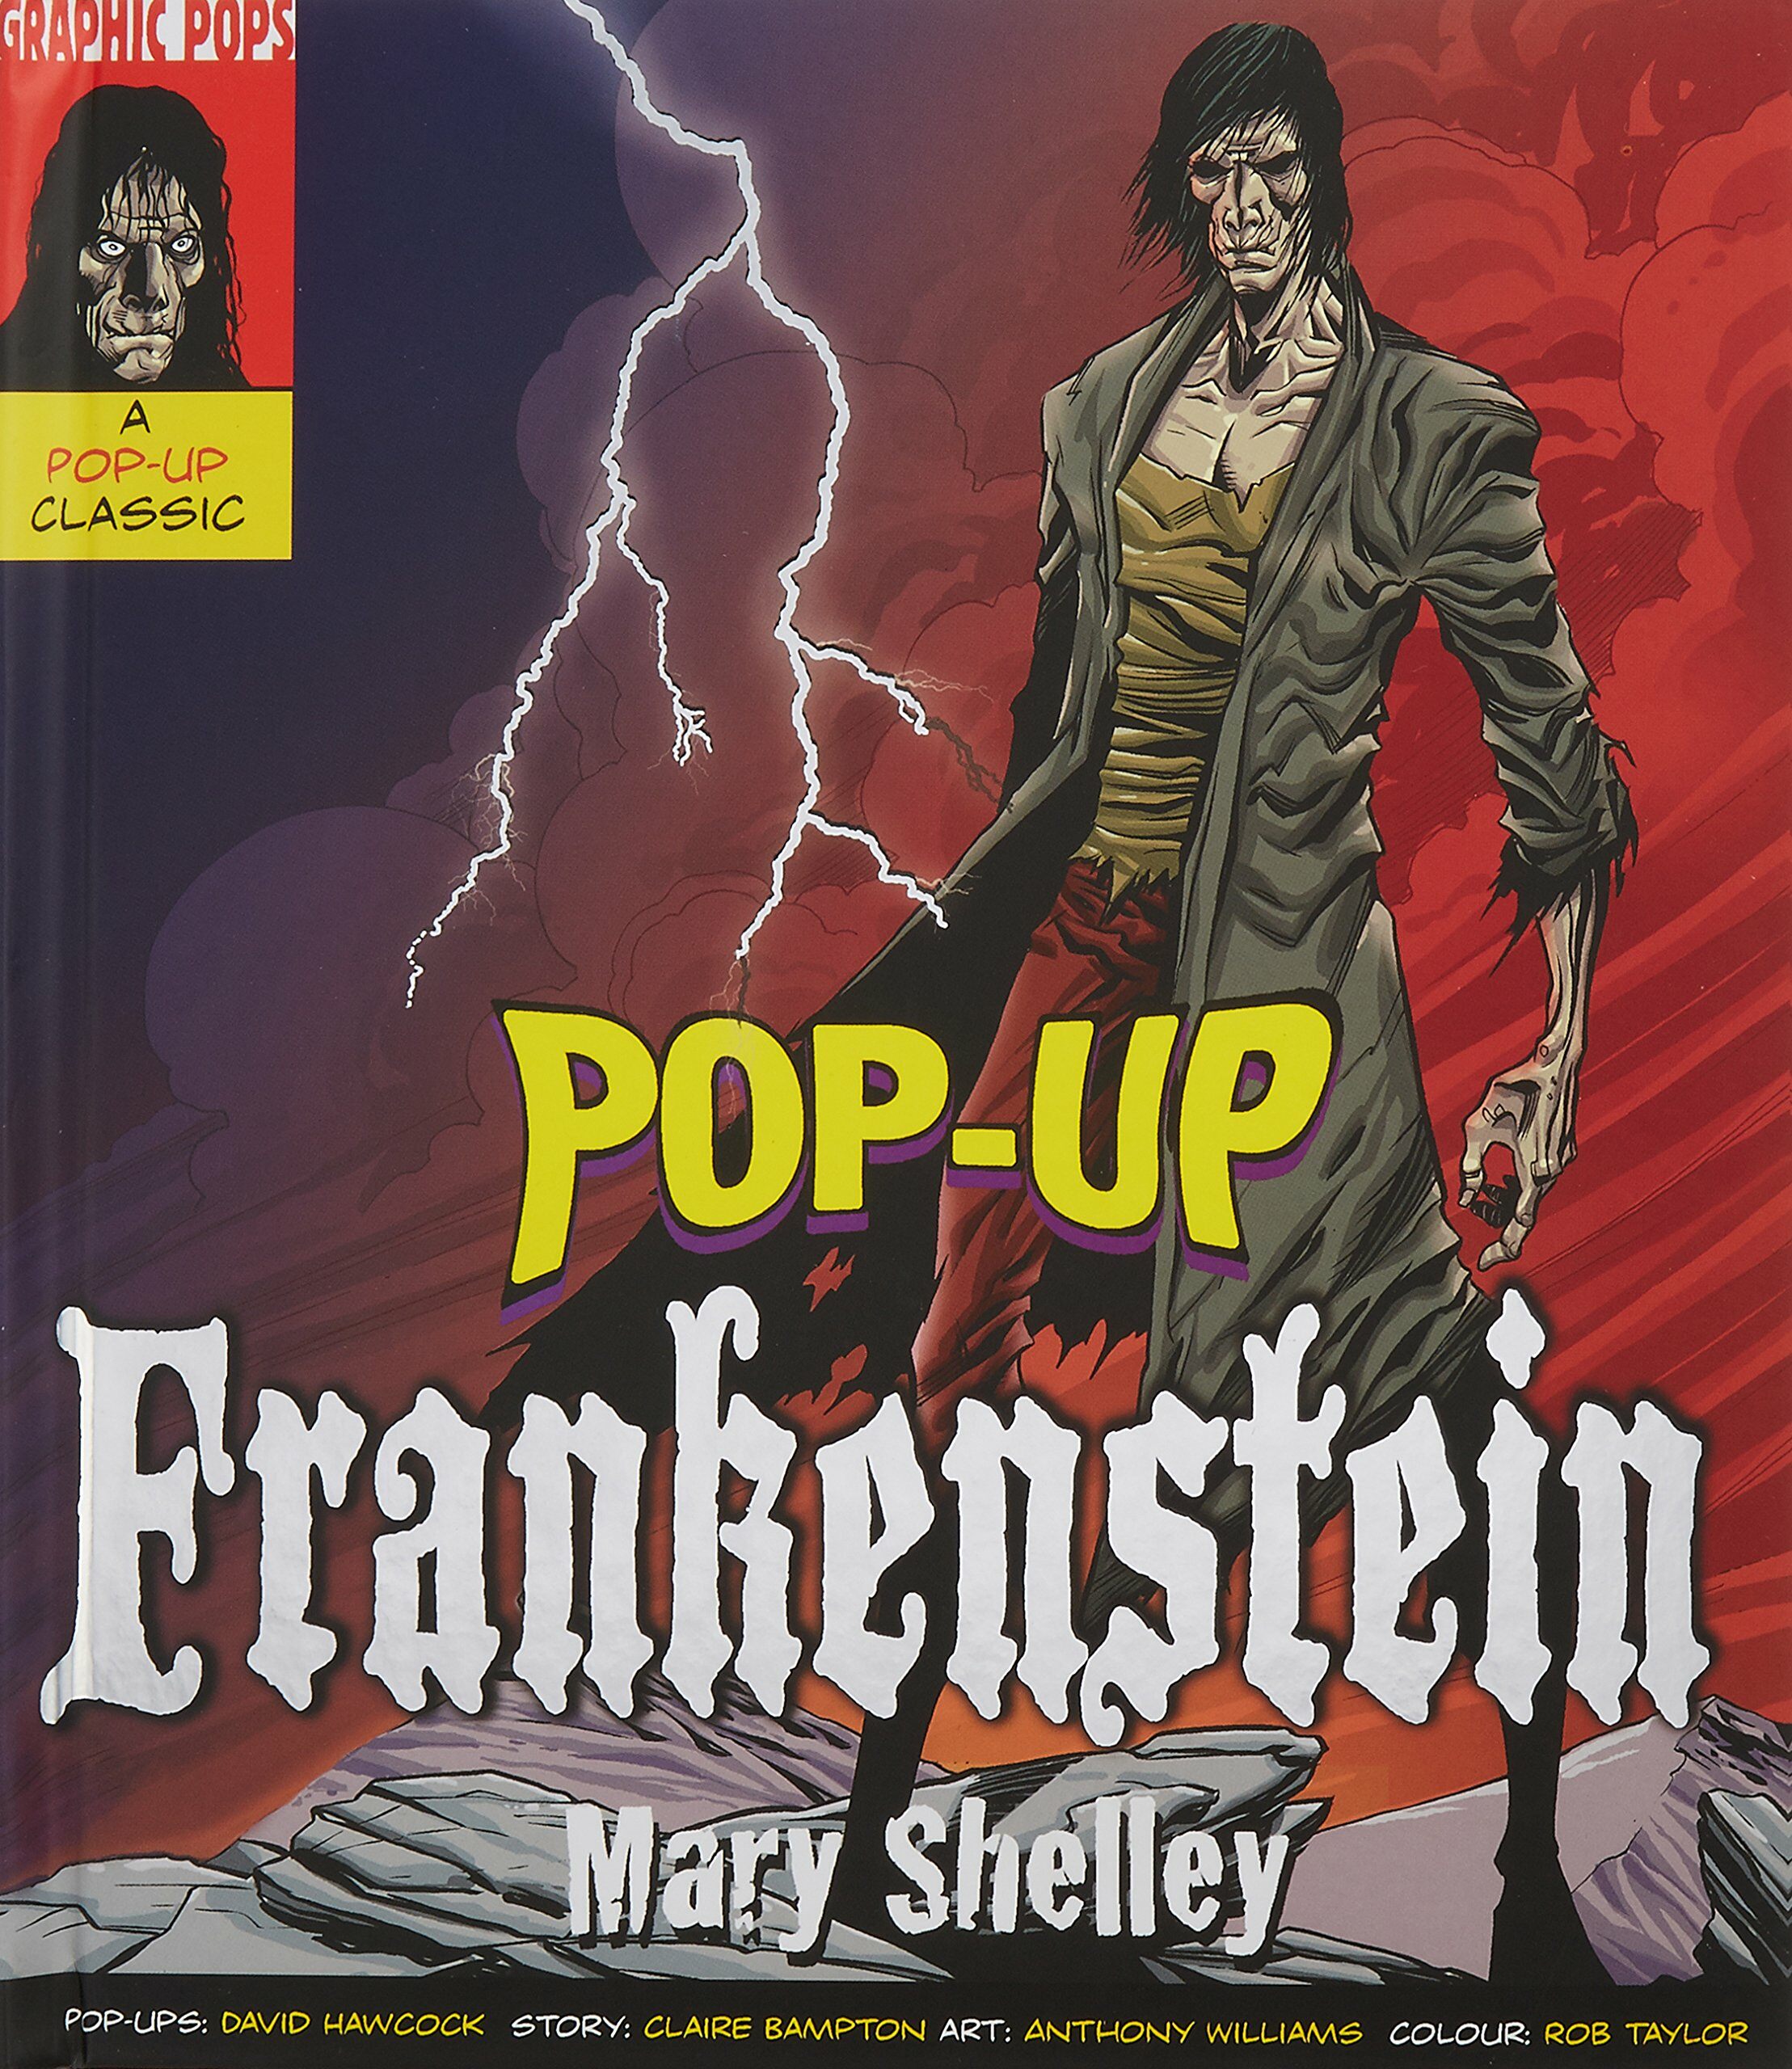 Frankenstein (Hardcover)